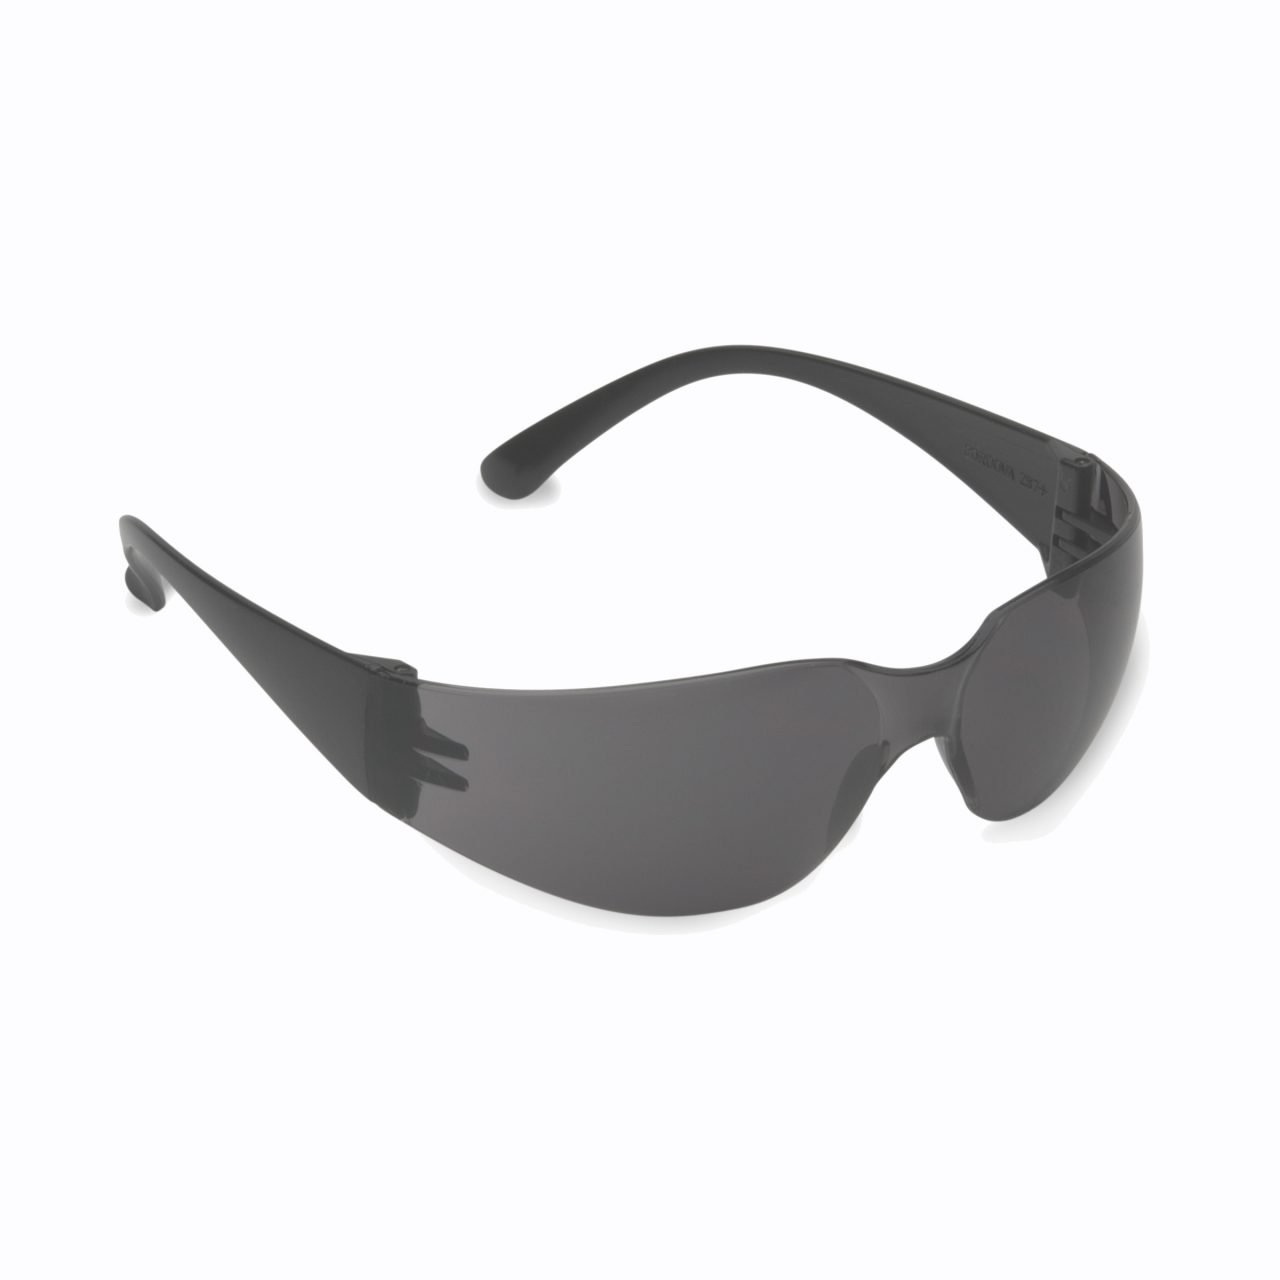 Cordova Bulldog Safety Glasses - SPEHB20S